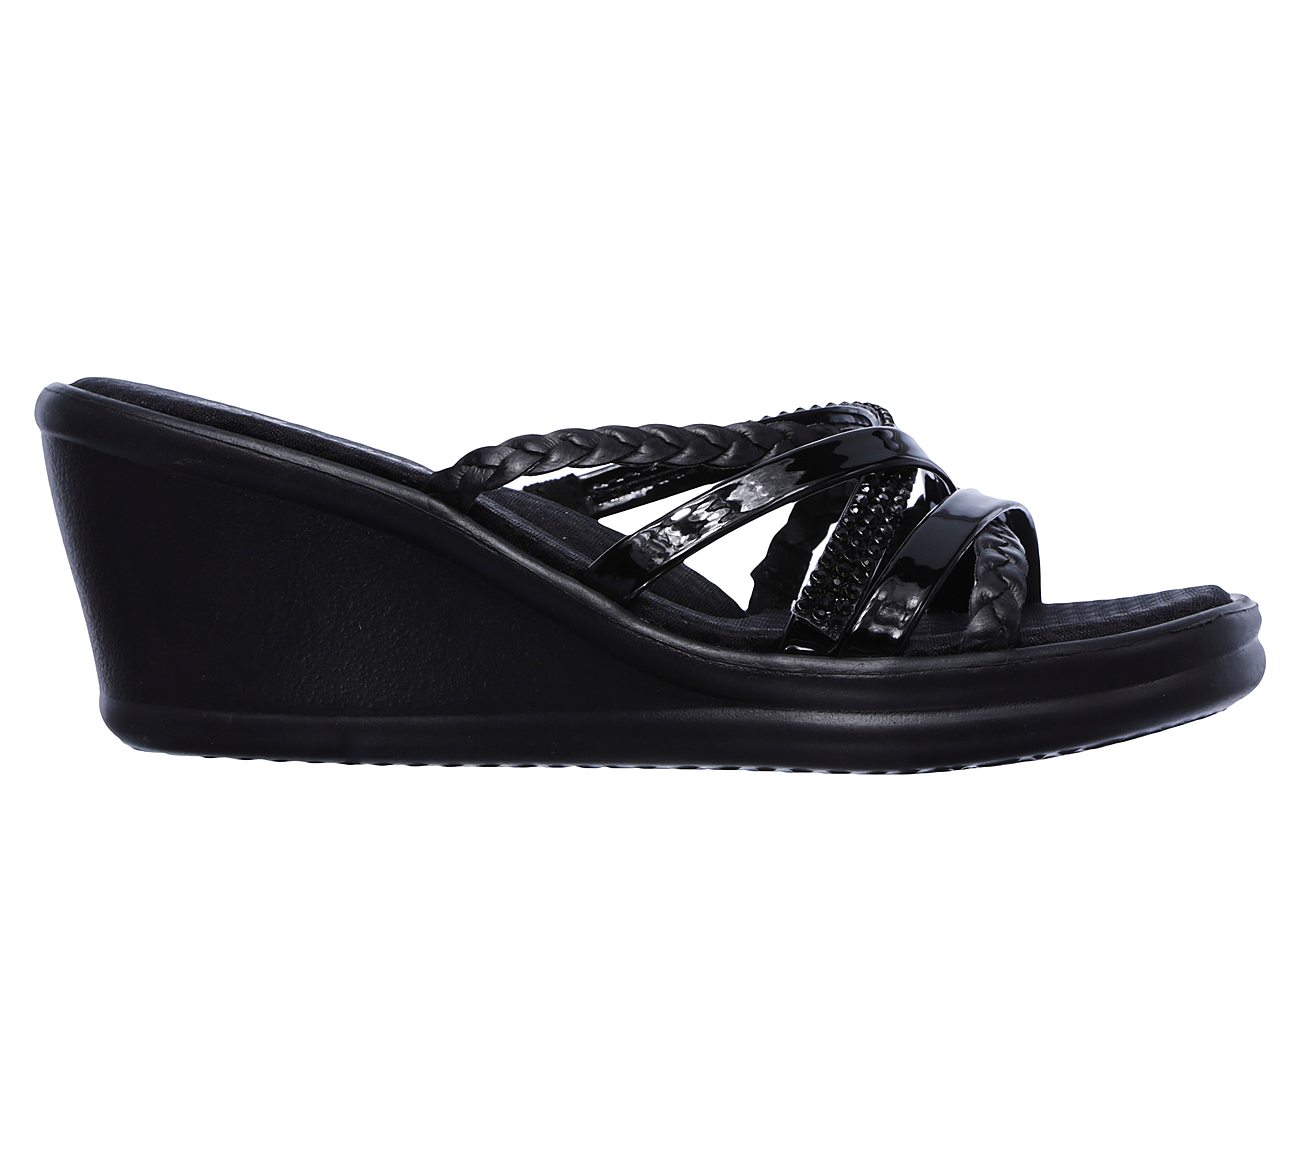 Buy > skechers heeled sandals > in stock